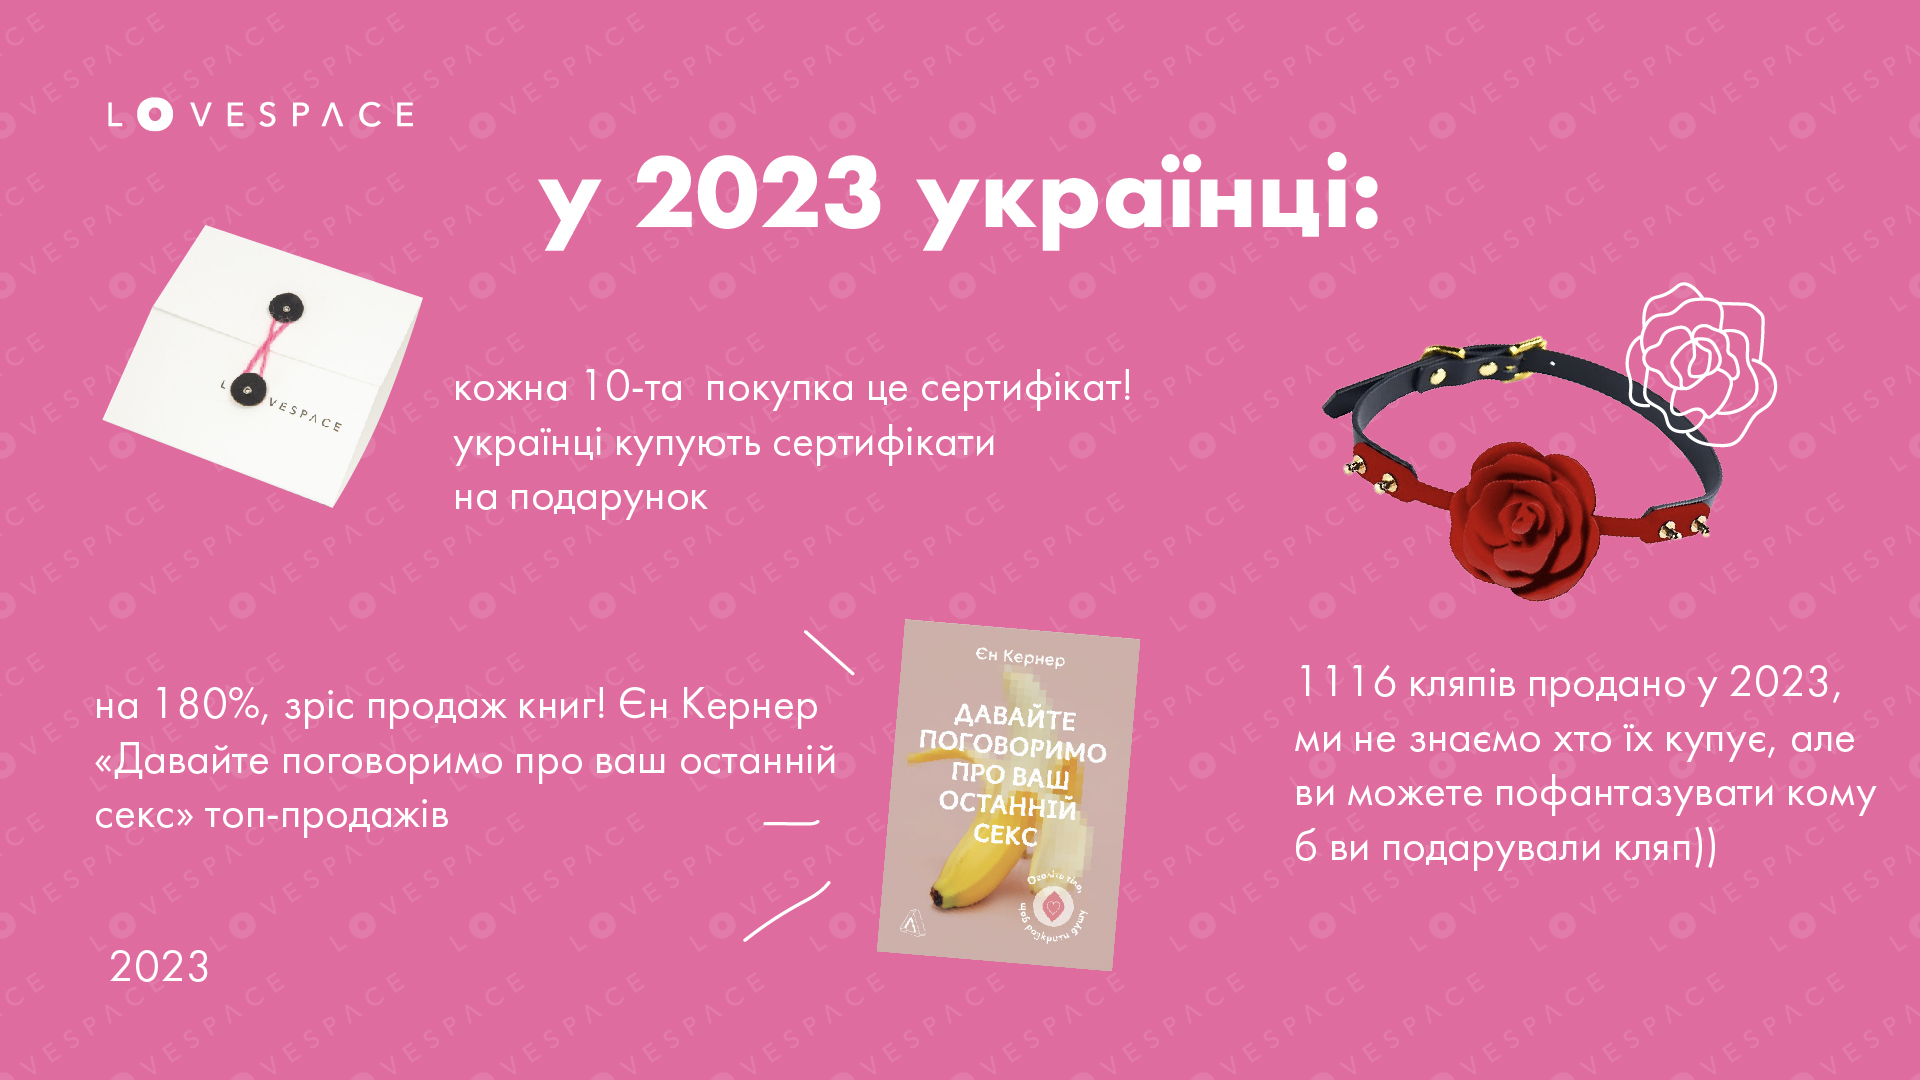 Яким було сексуальне життя українців у 2023